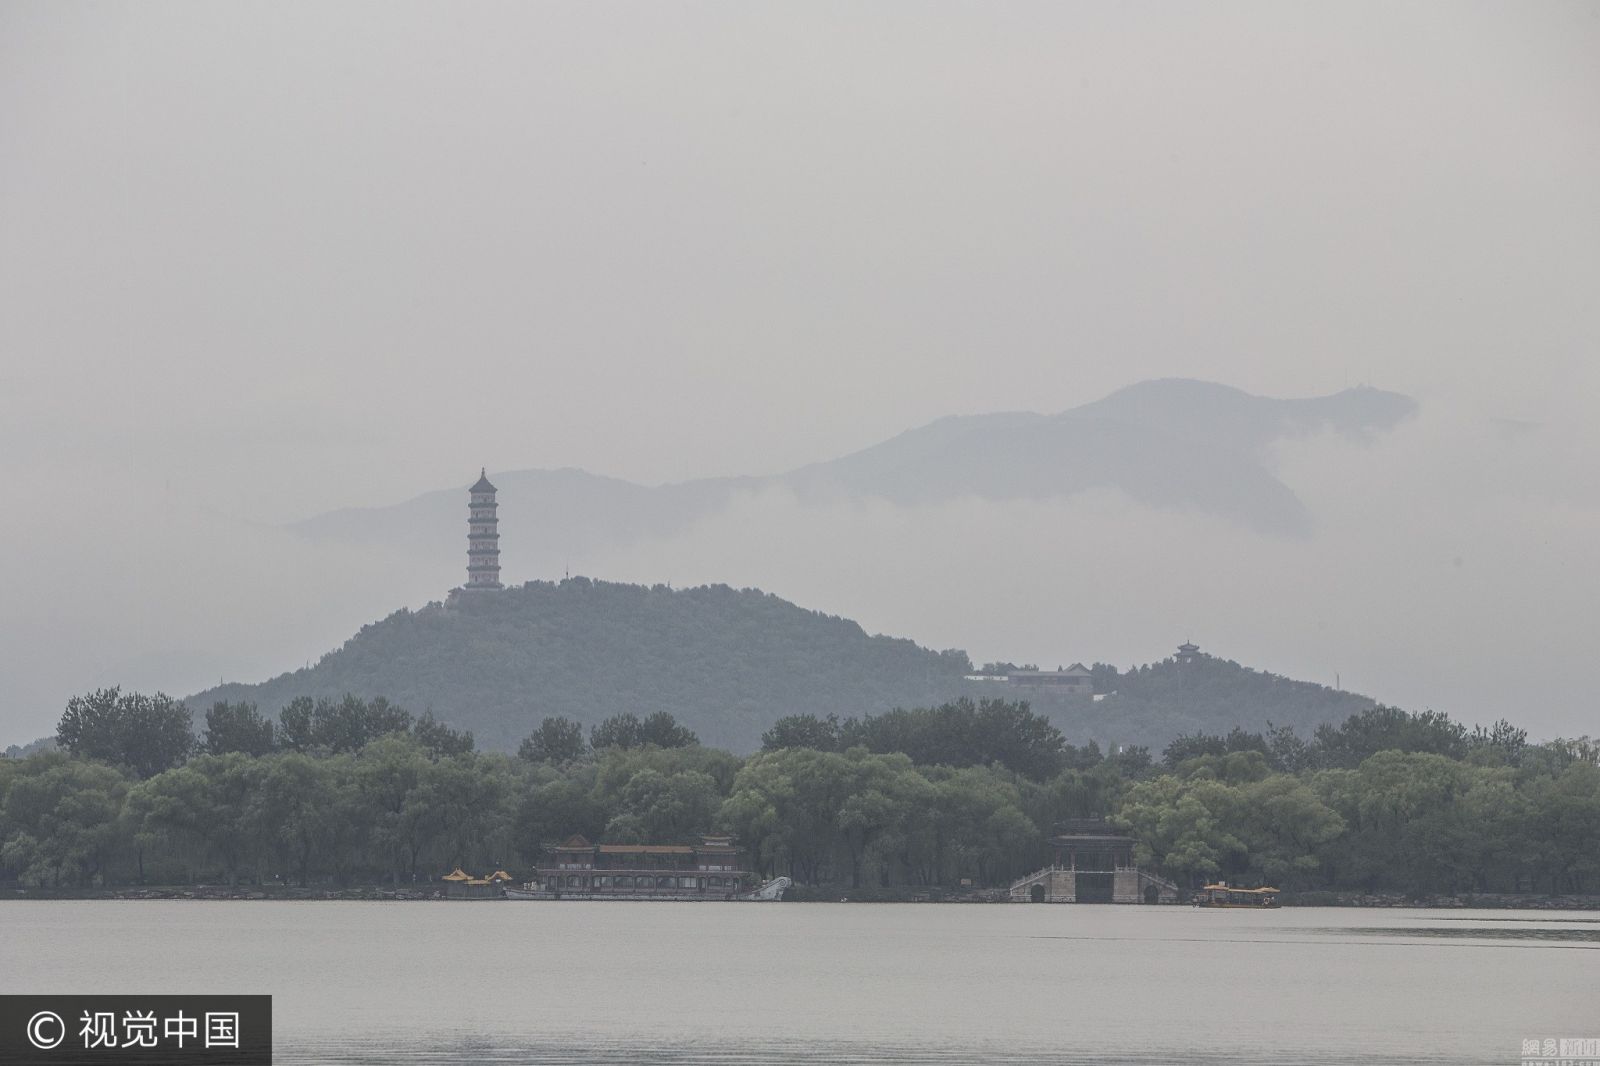 北京雨后云雾缭绕西山 皇家园林宛如水墨图 